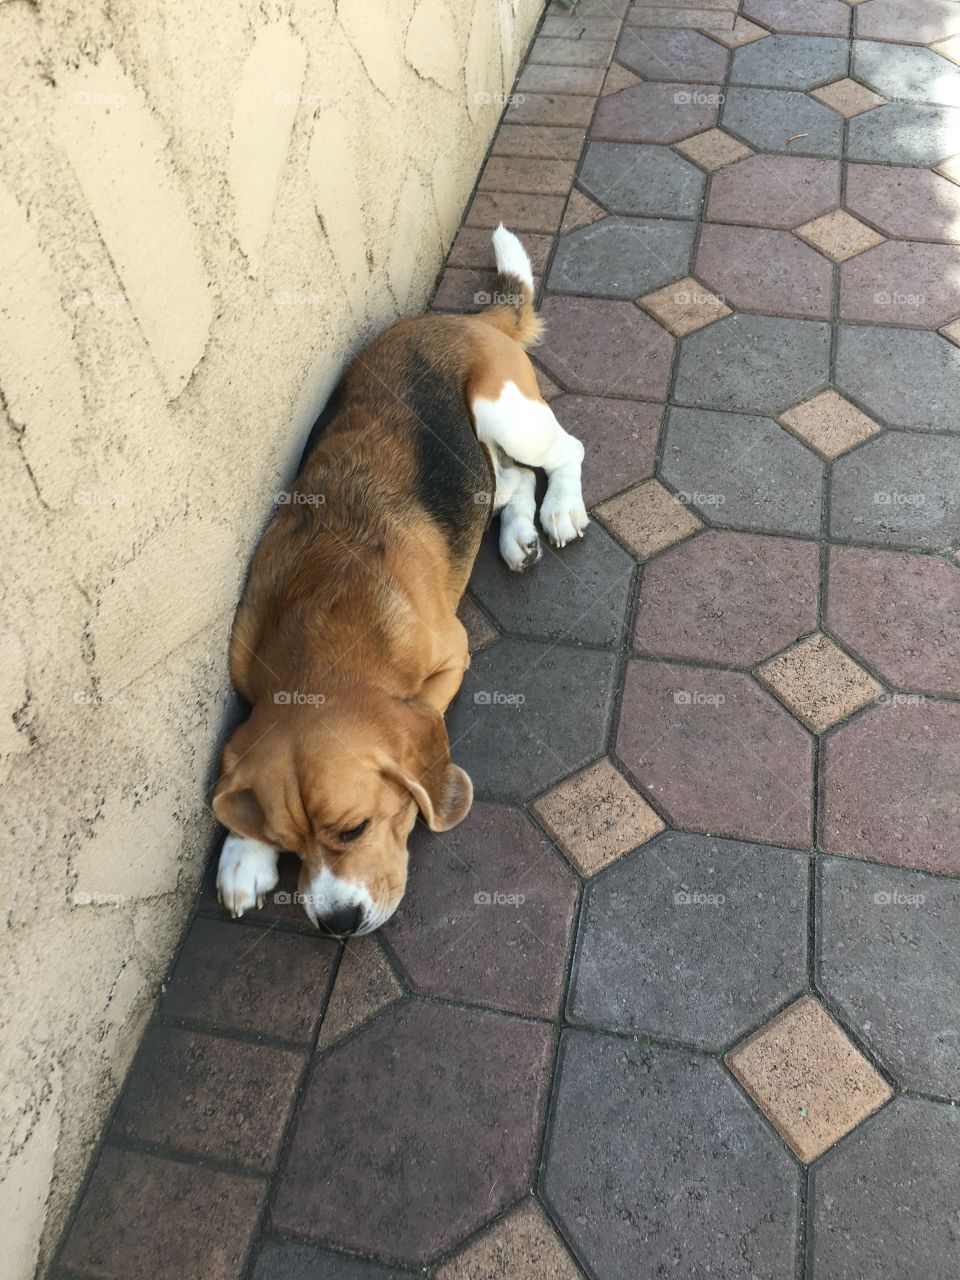 A Beagle napping outside.